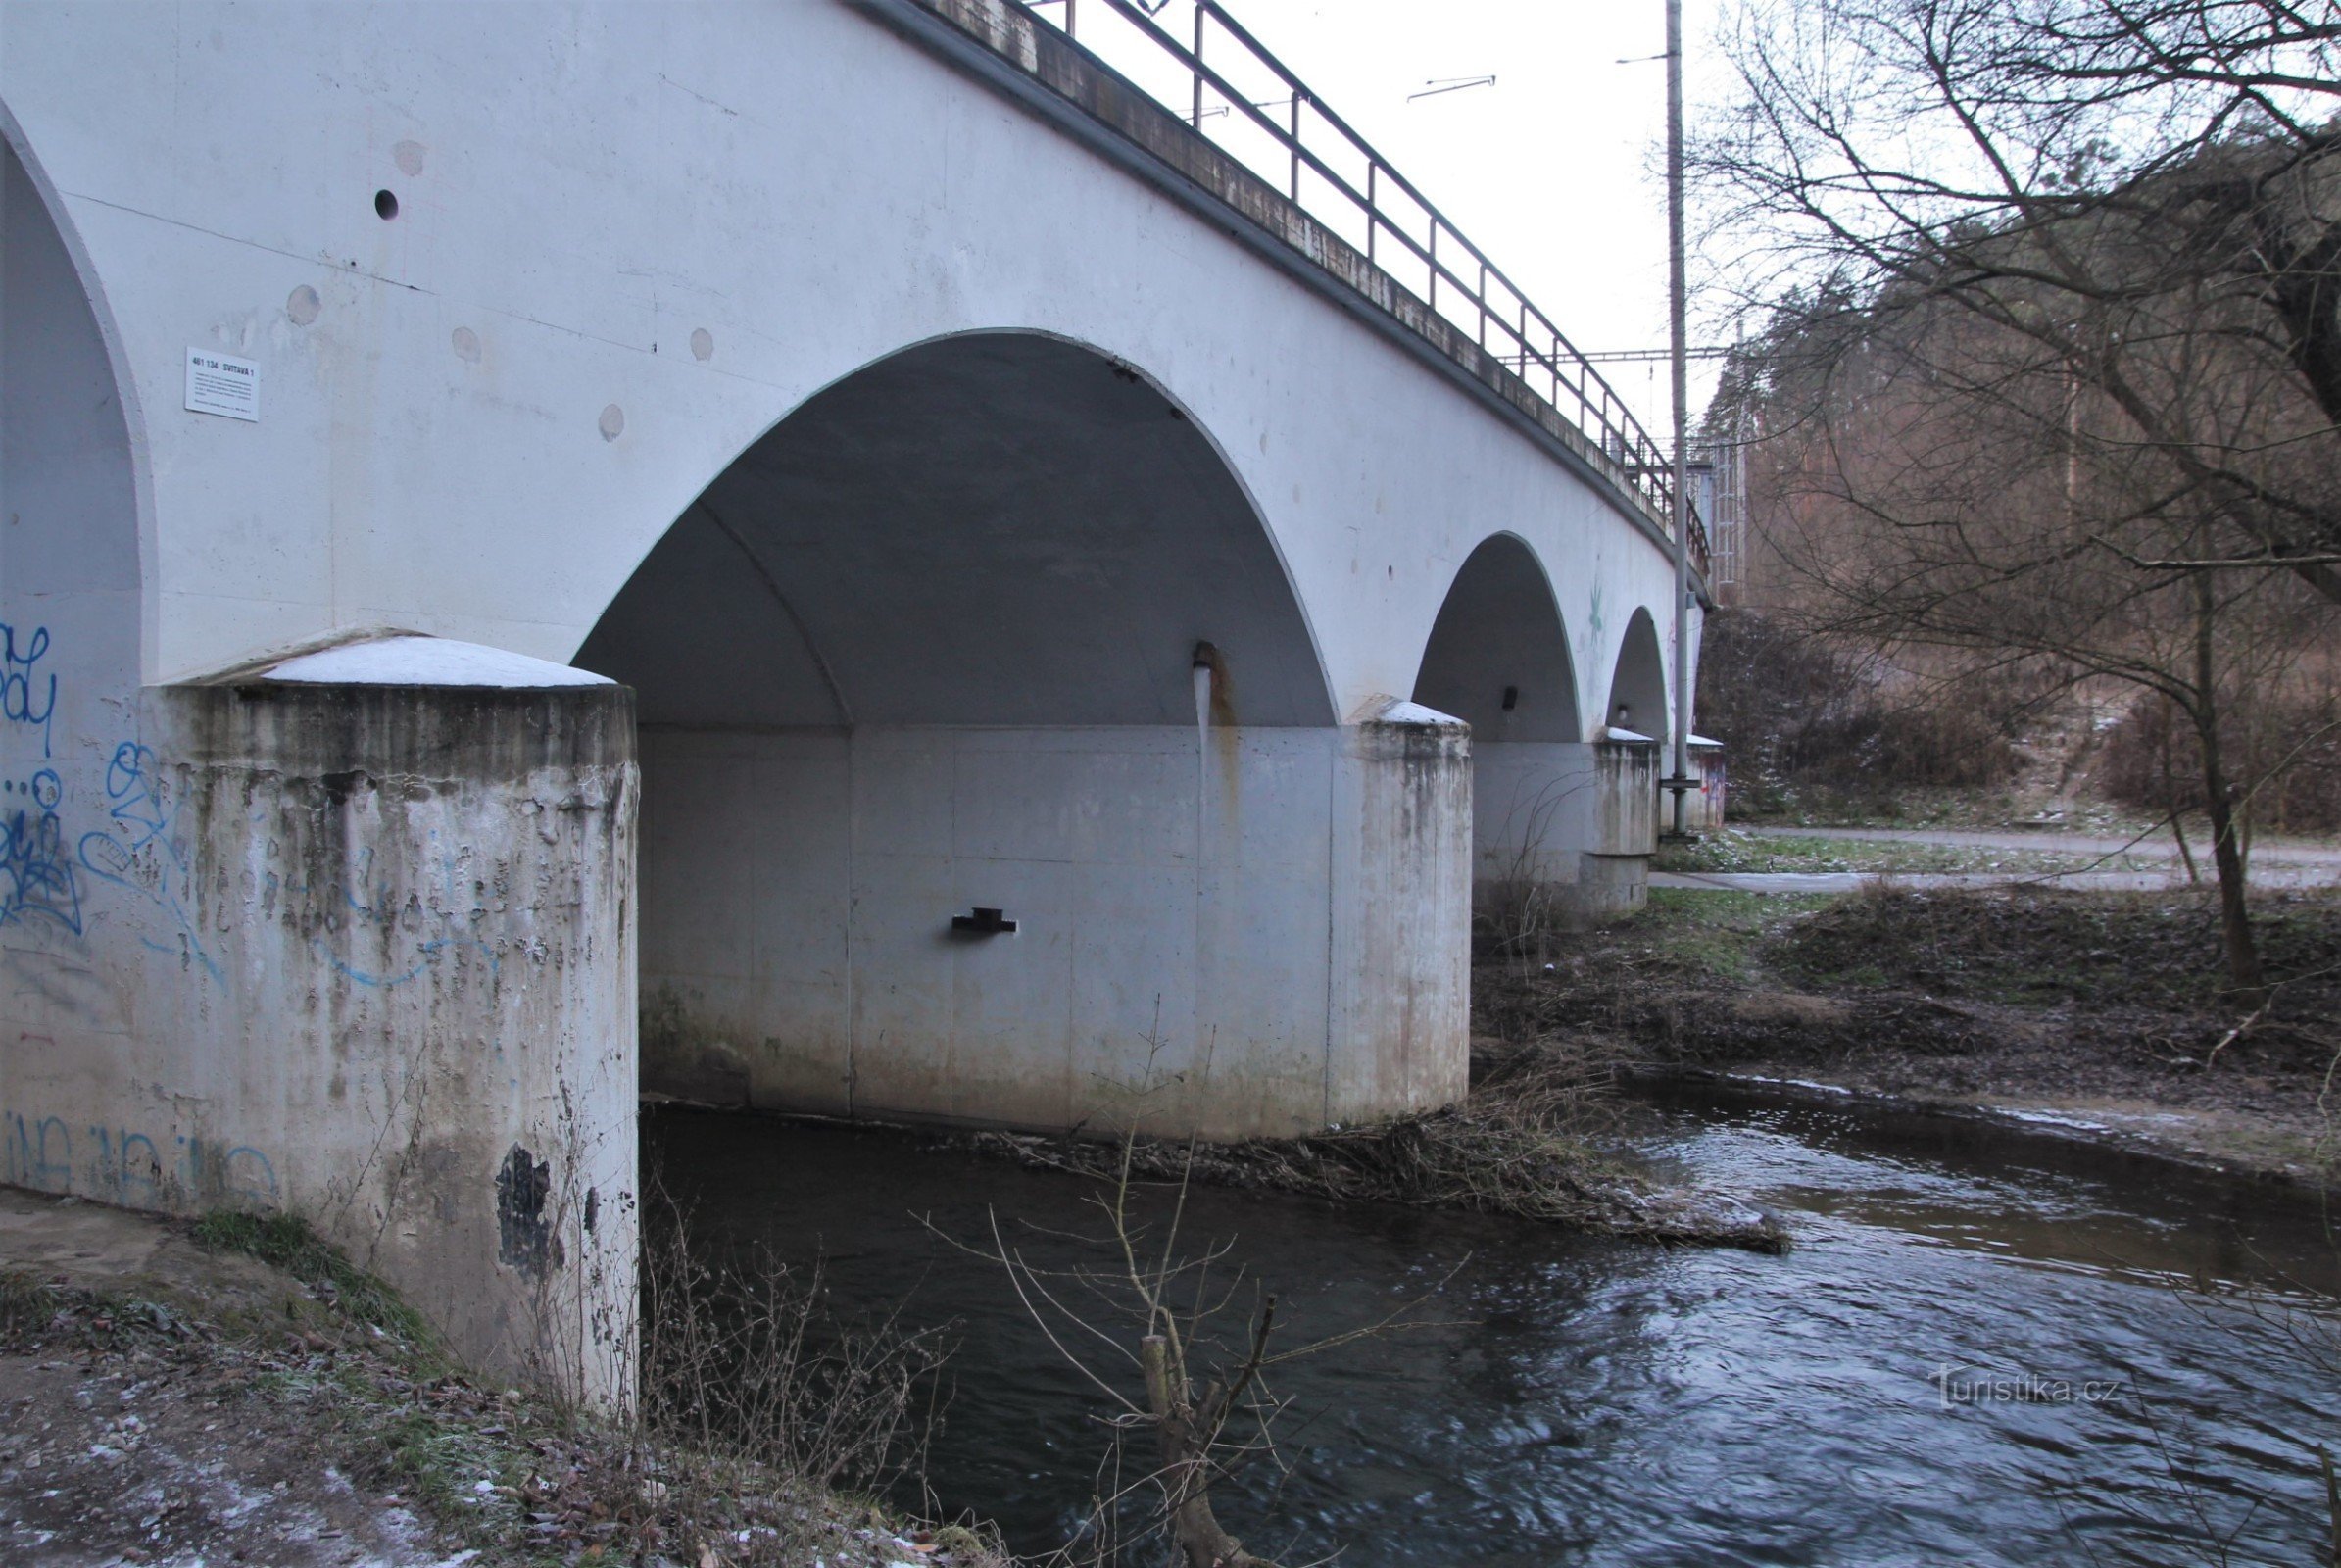 Jernbanebroen før renoveringen (januar 2015)